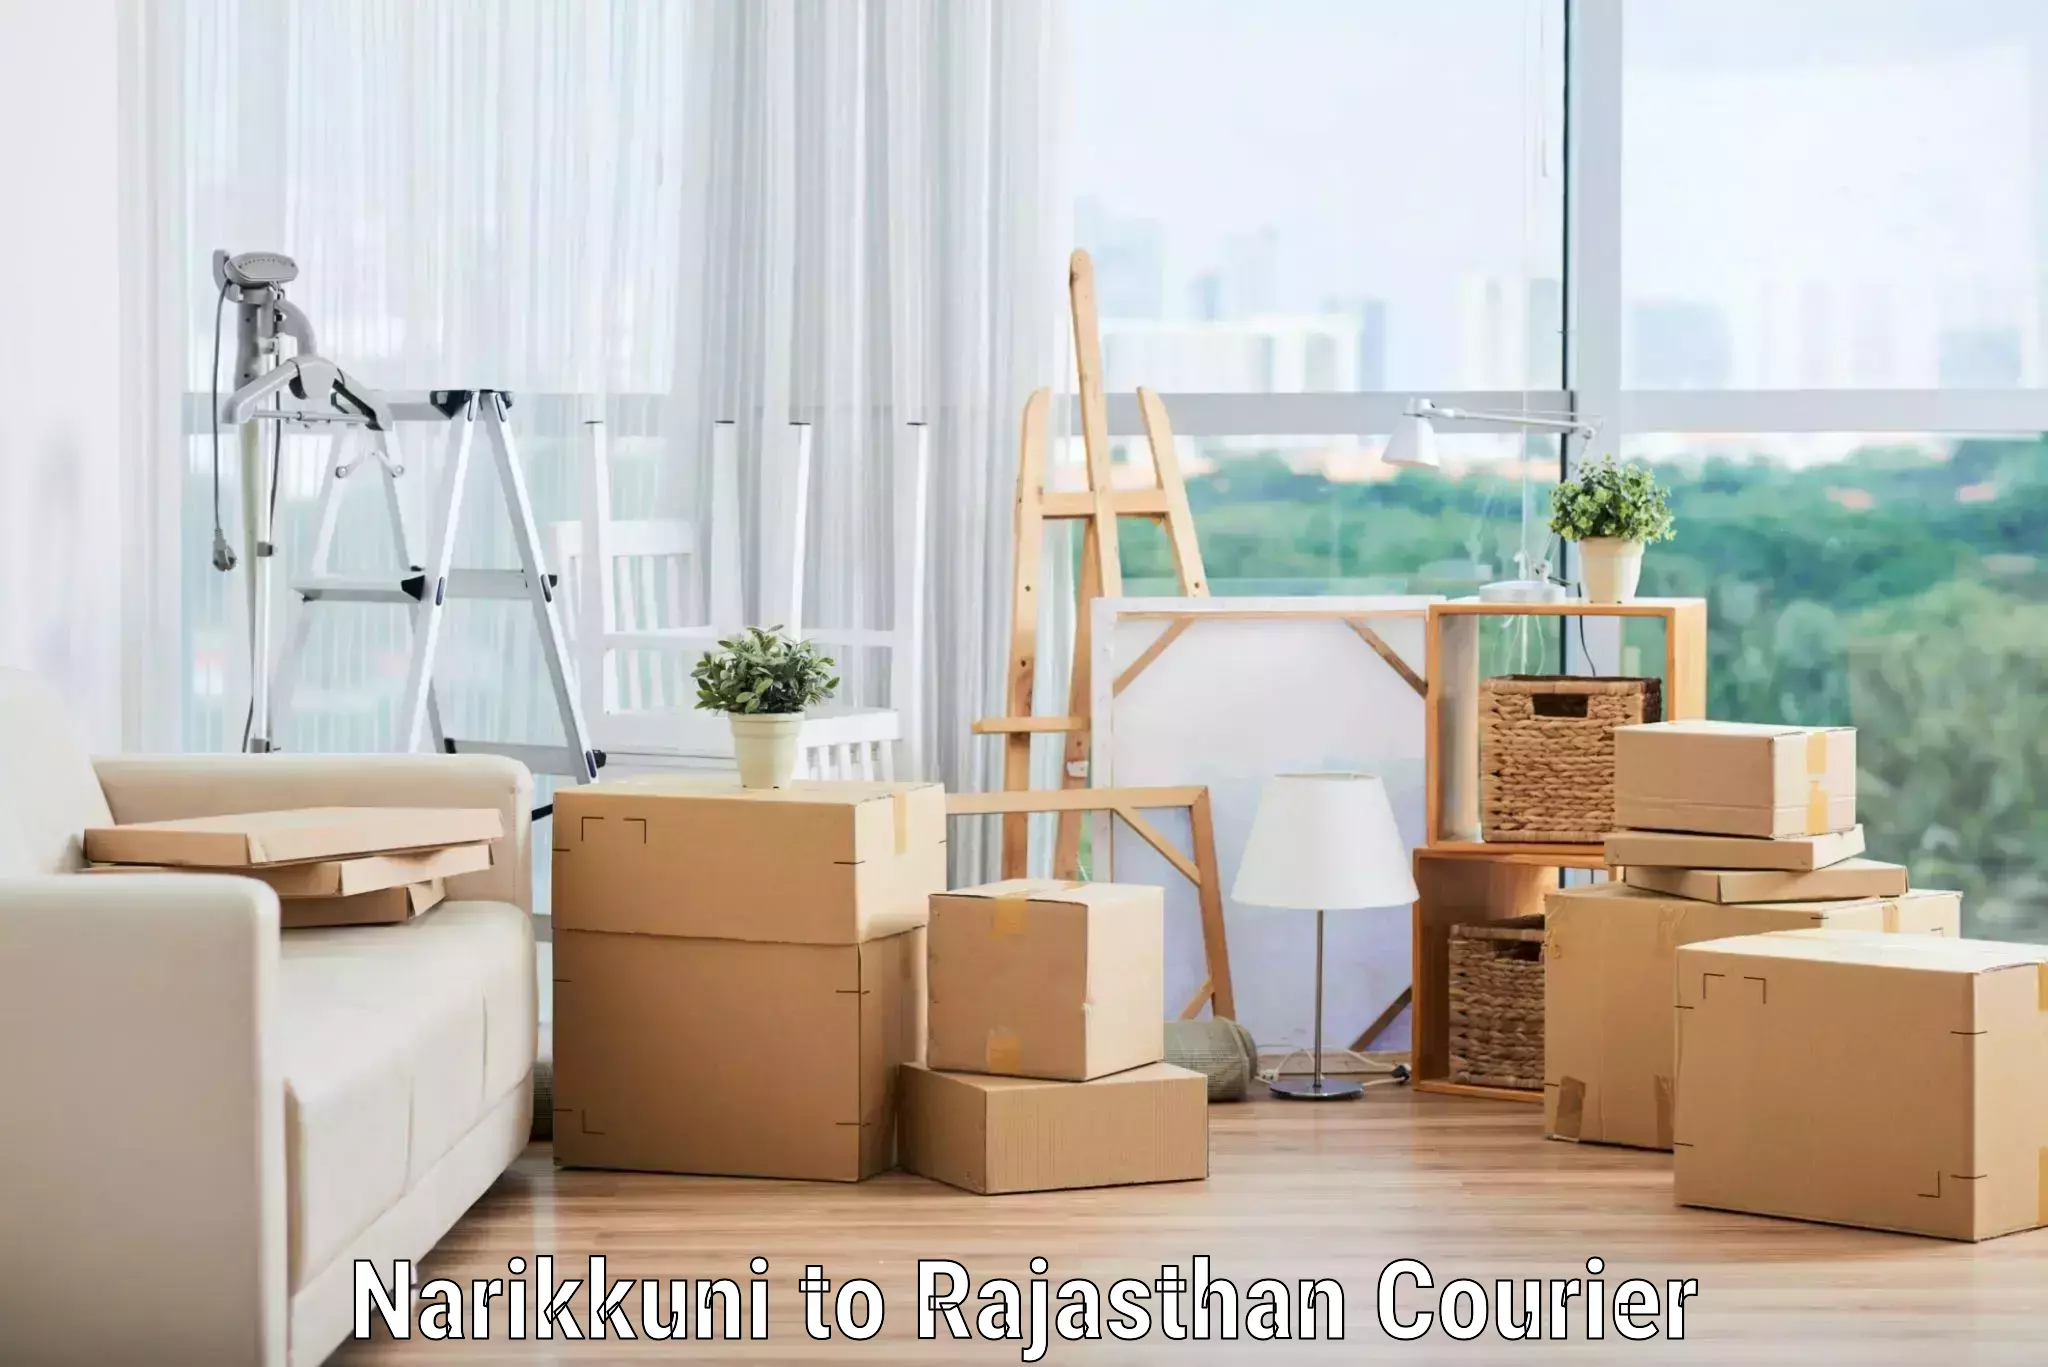 Full-service relocation Narikkuni to Kekri